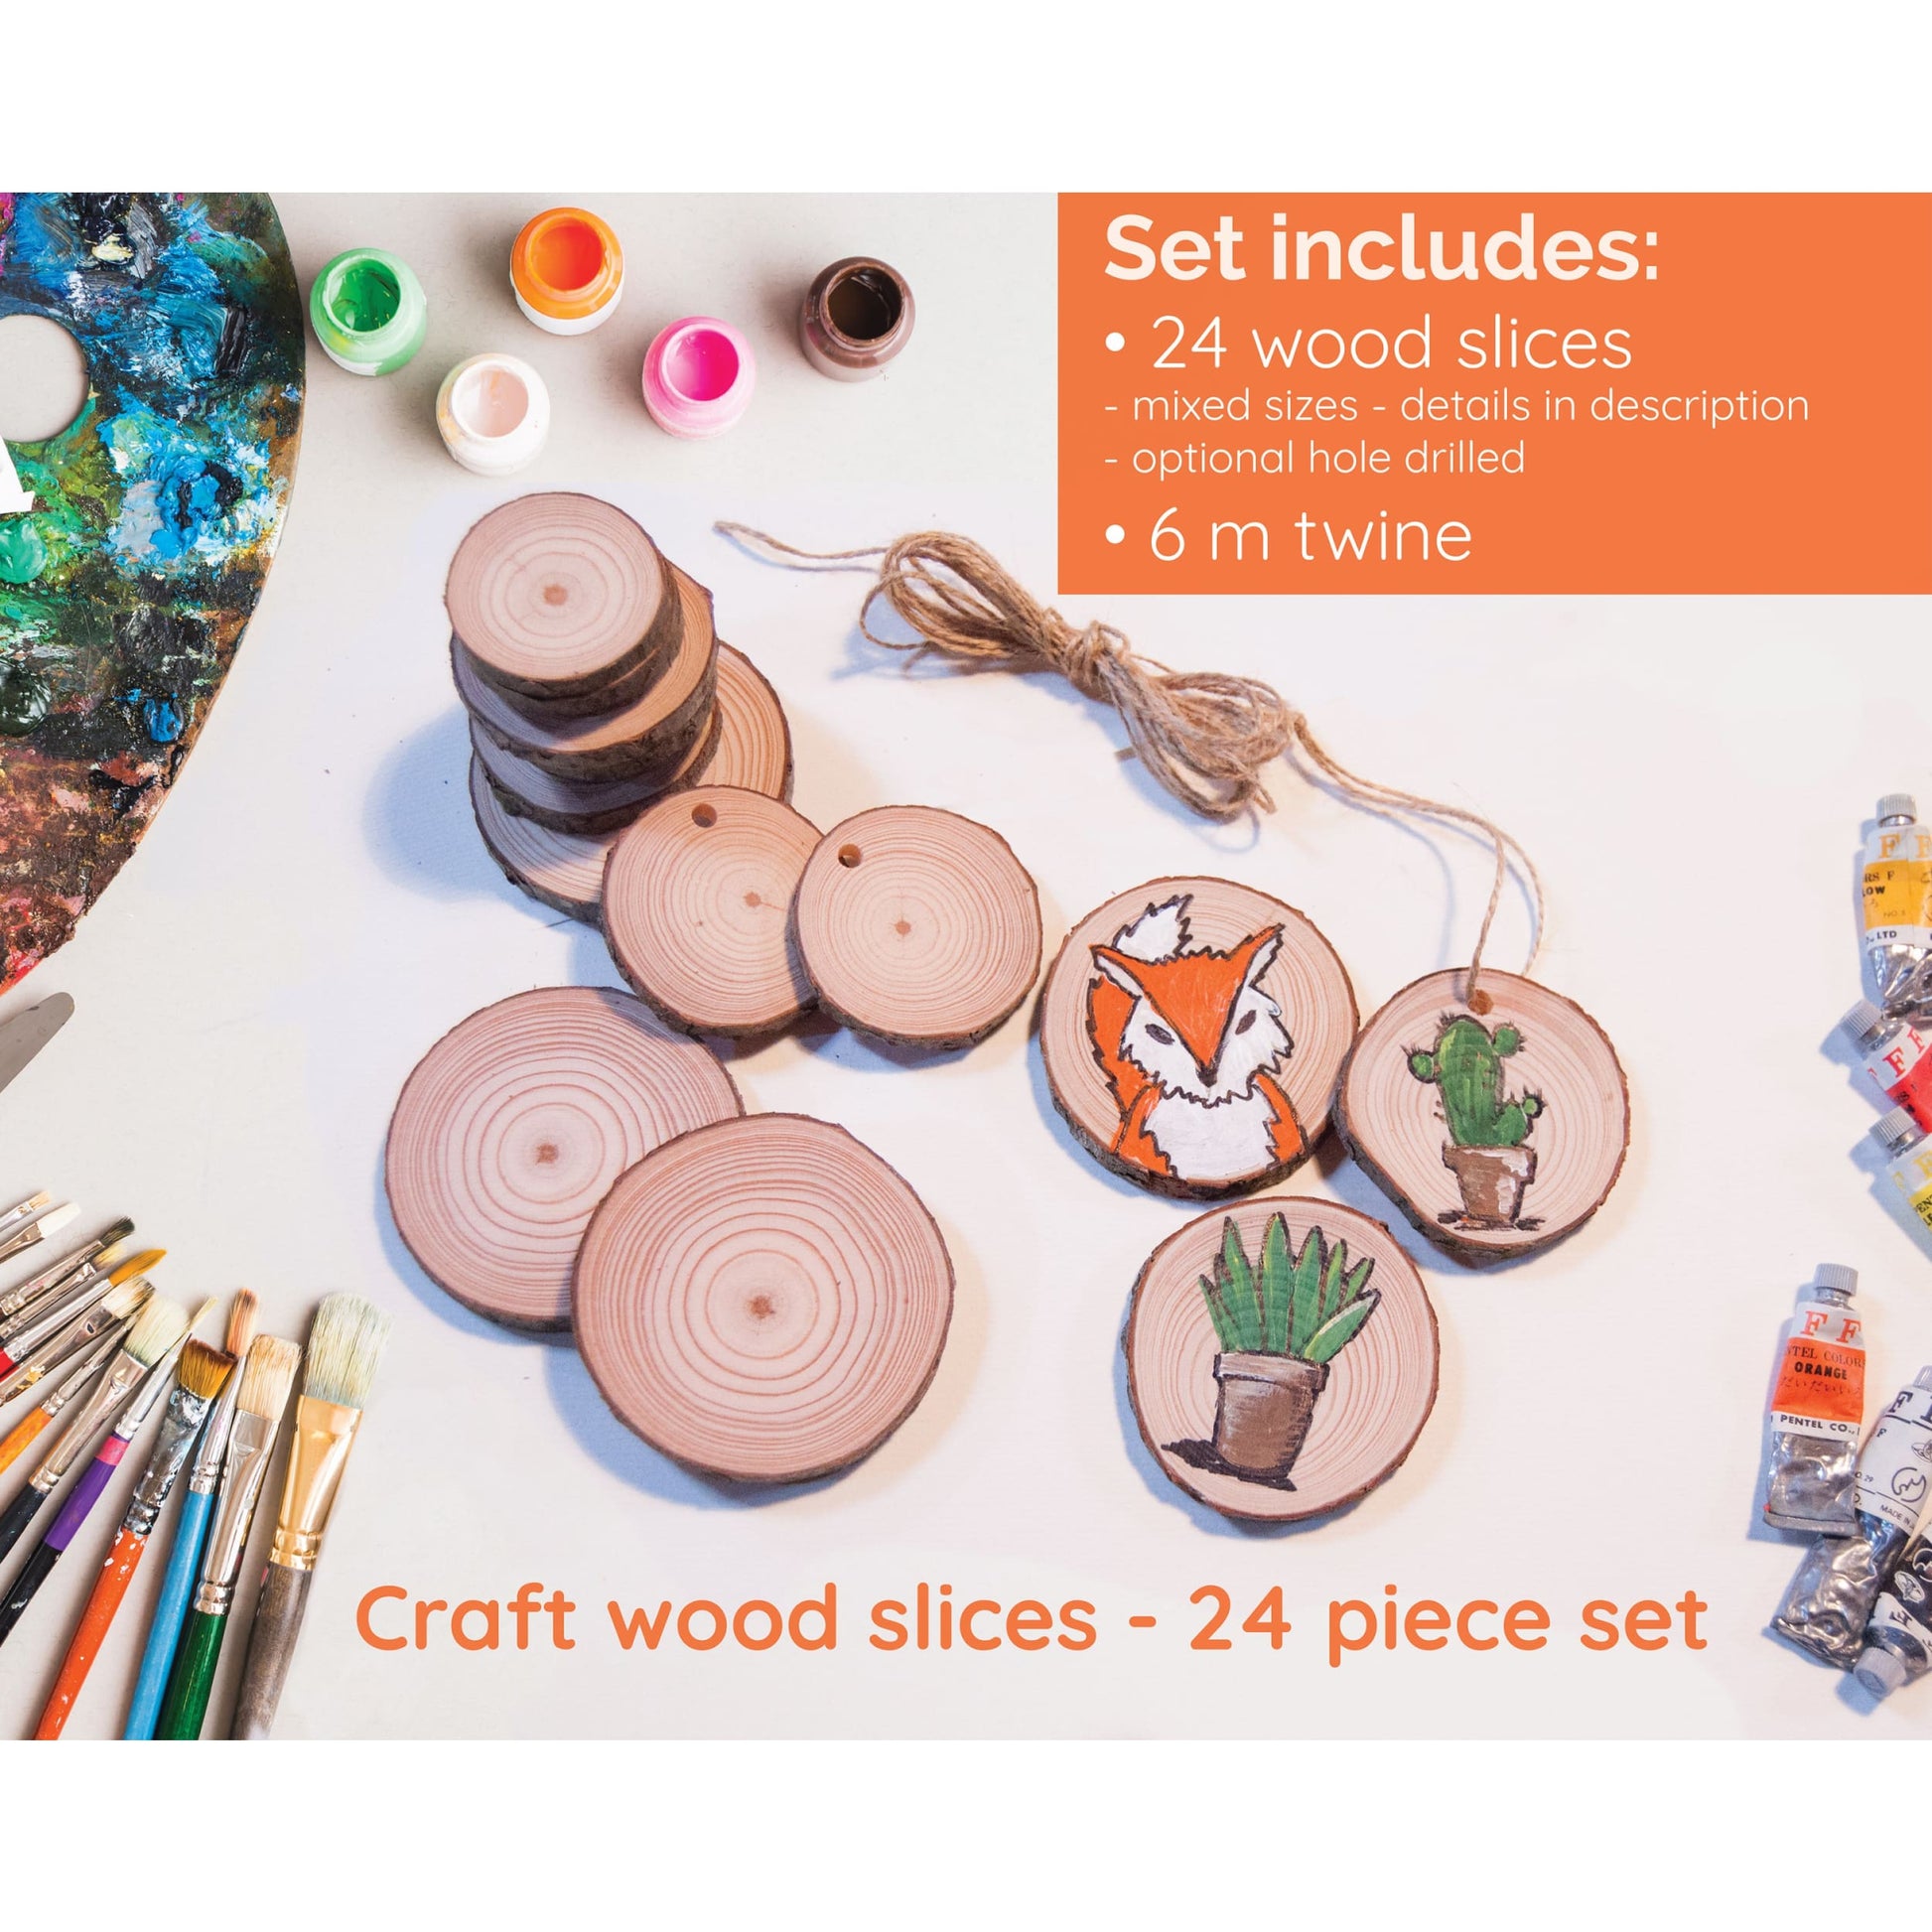 24 Piece Wood Slice Craft Pack - Wood slice kits